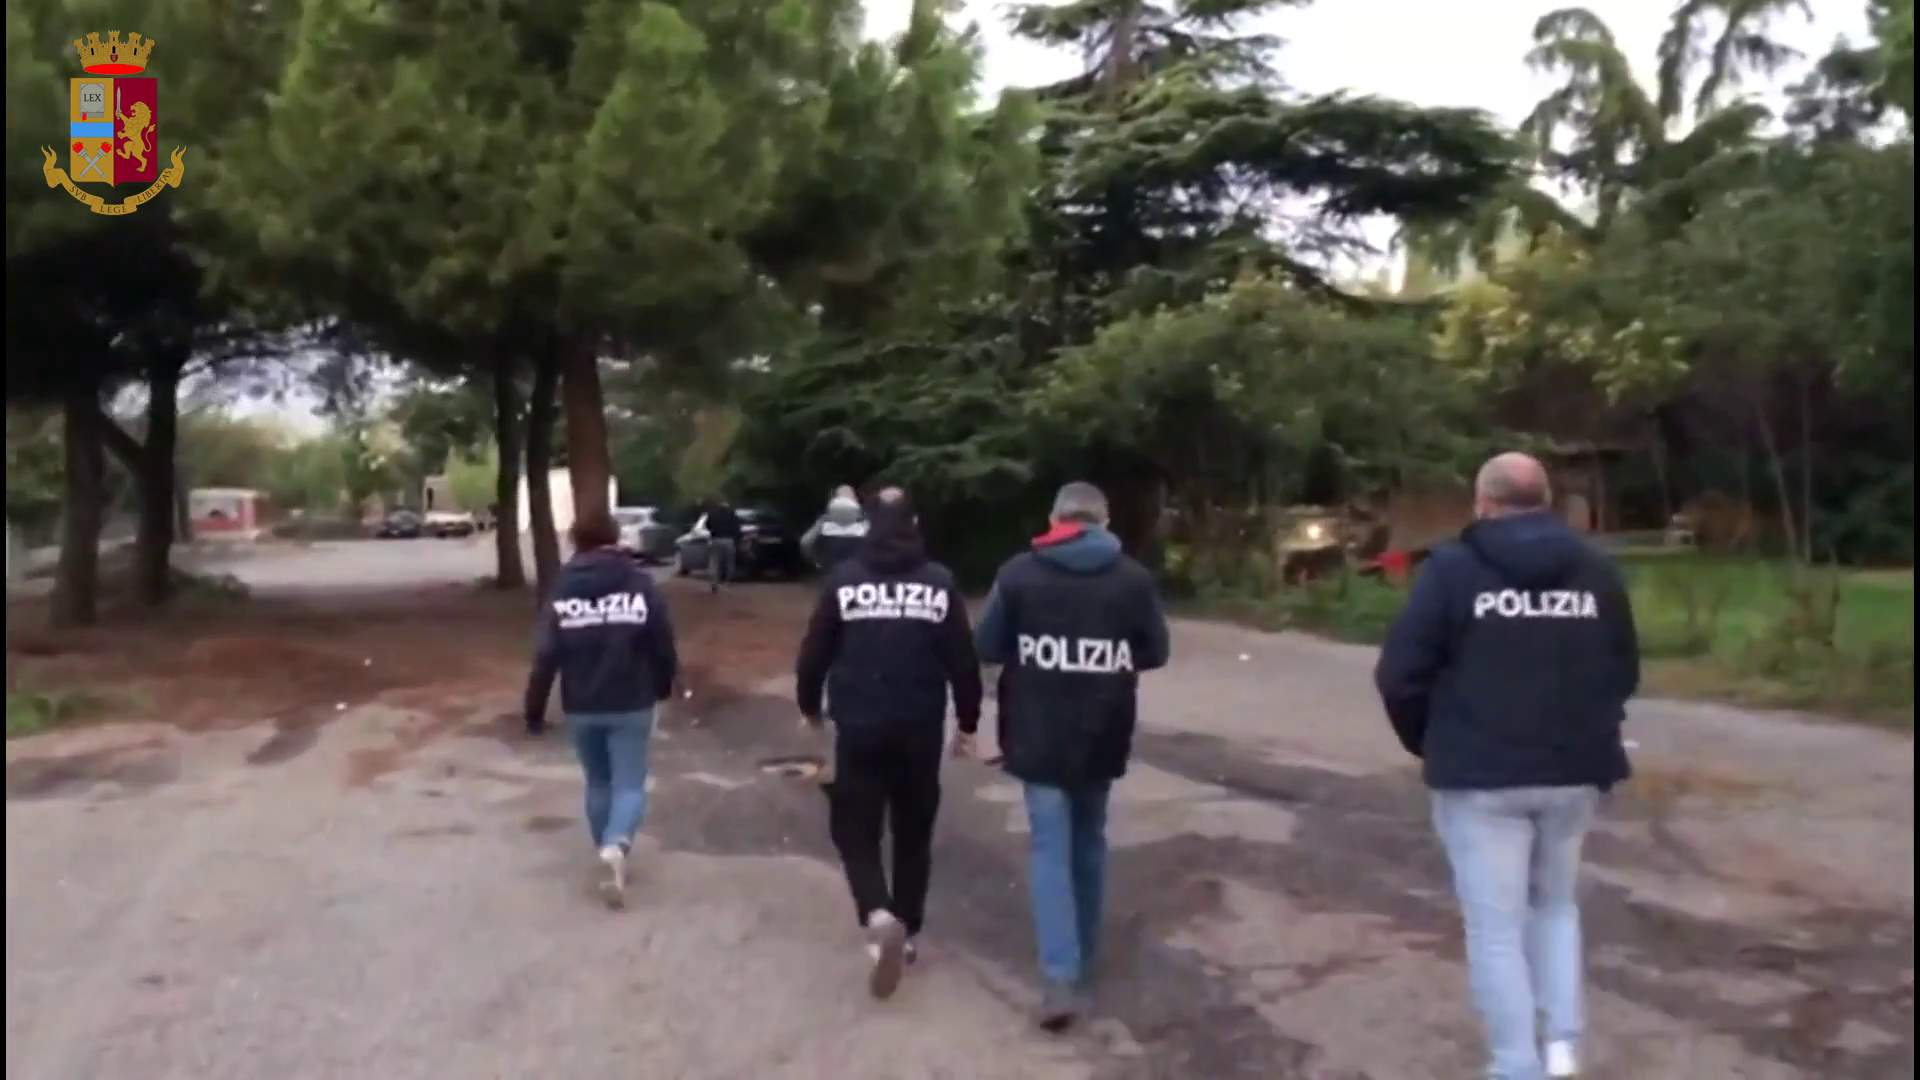 Questura Di Cremona Due Minori Arrestati Dalla Polizia Per Rapina E Lesioni